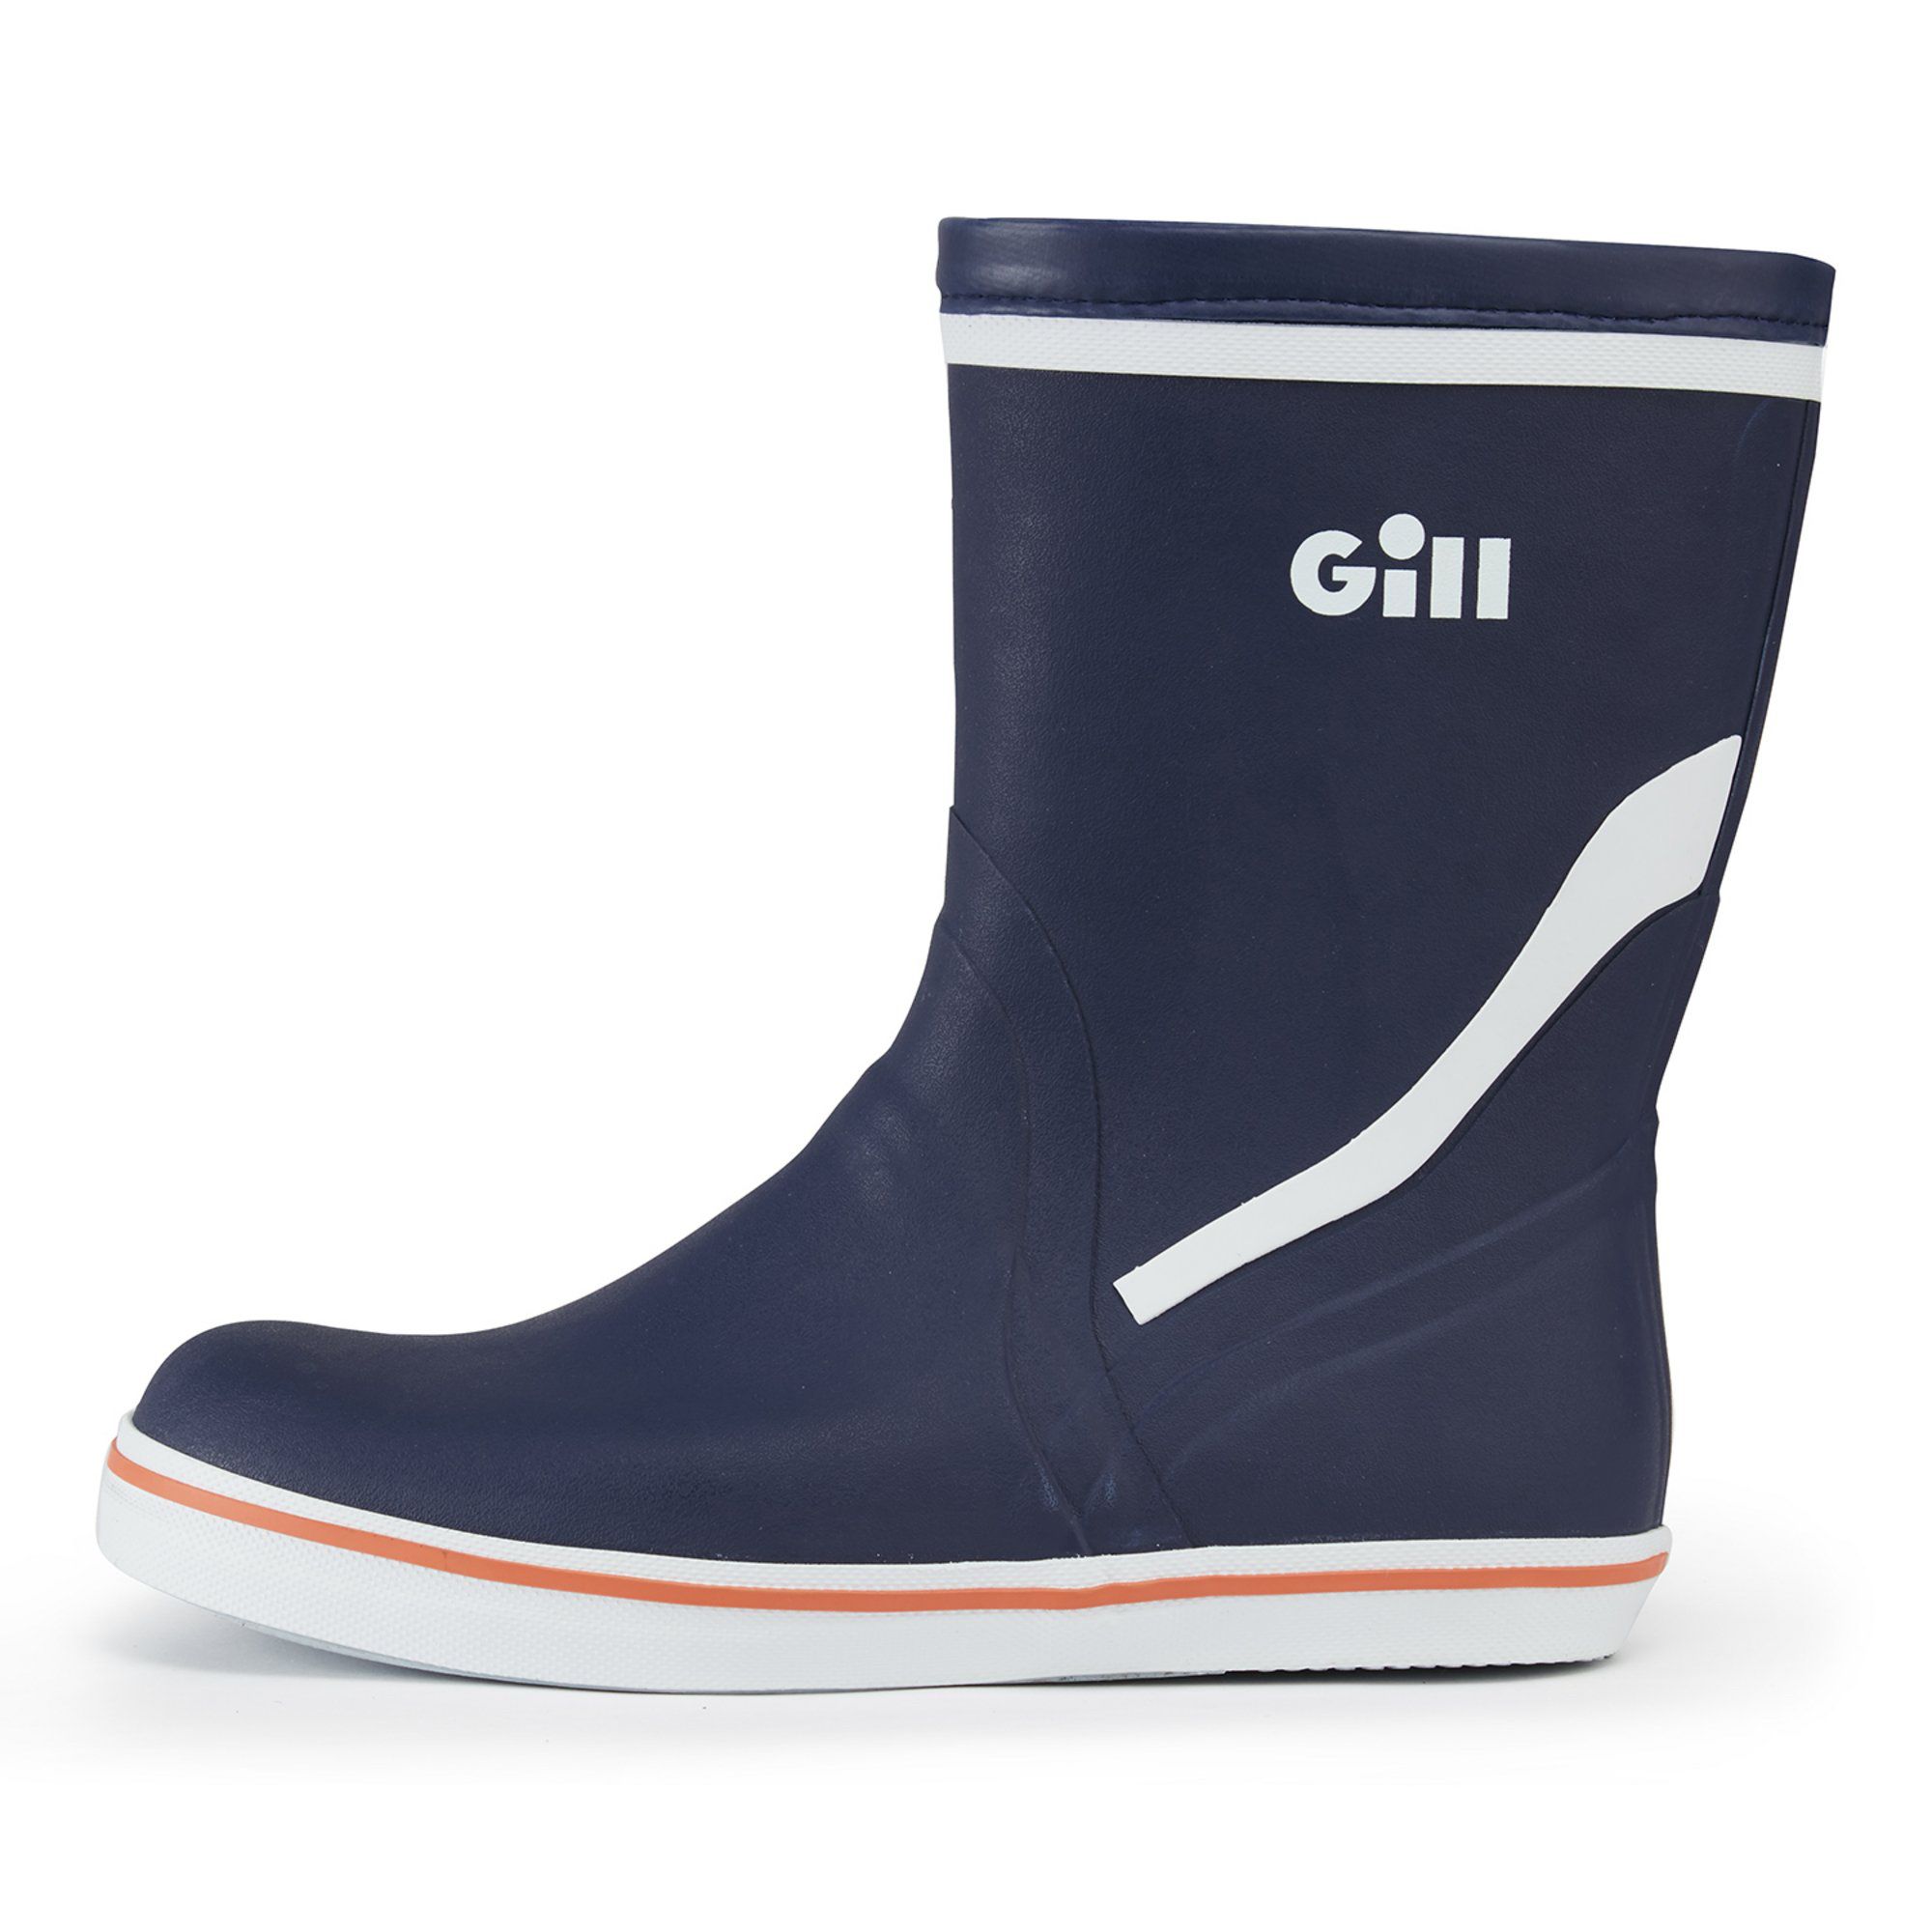 Gill  Ocean Boots